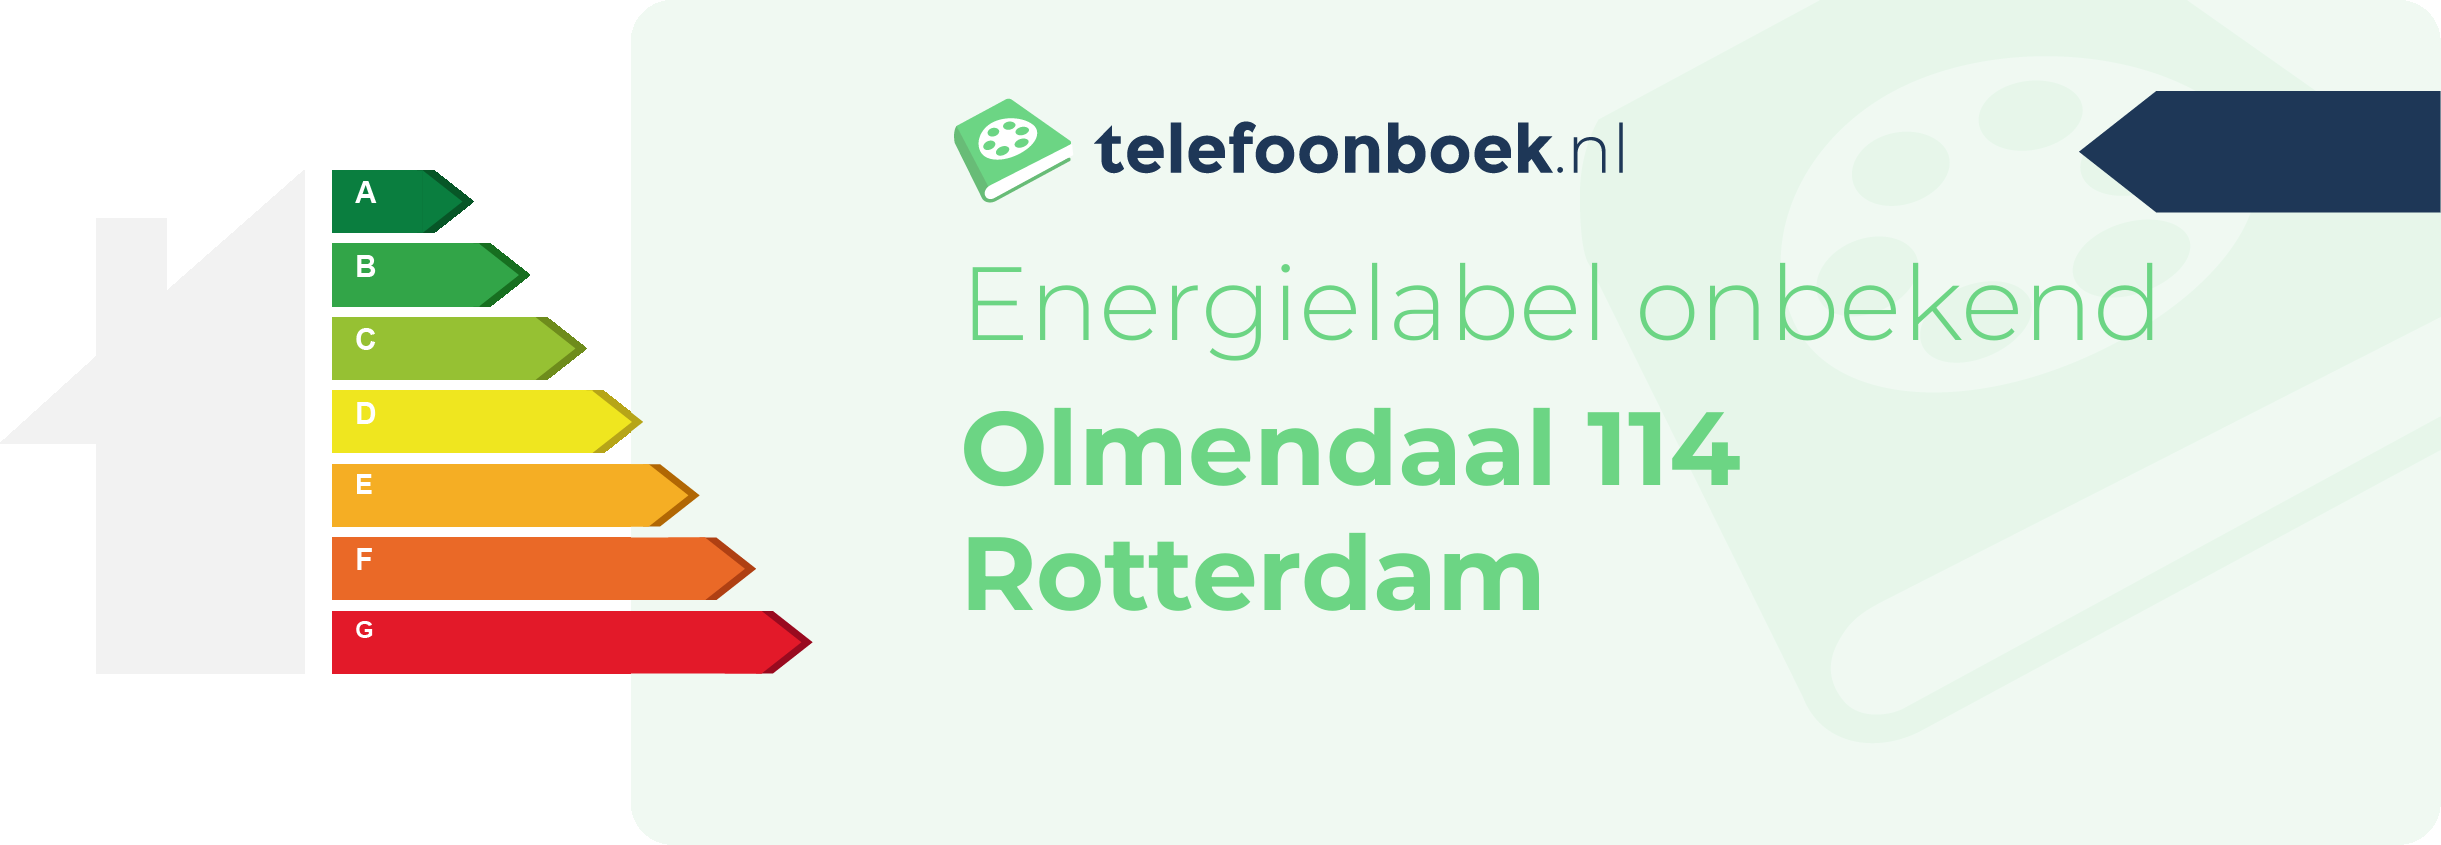 Energielabel Olmendaal 114 Rotterdam